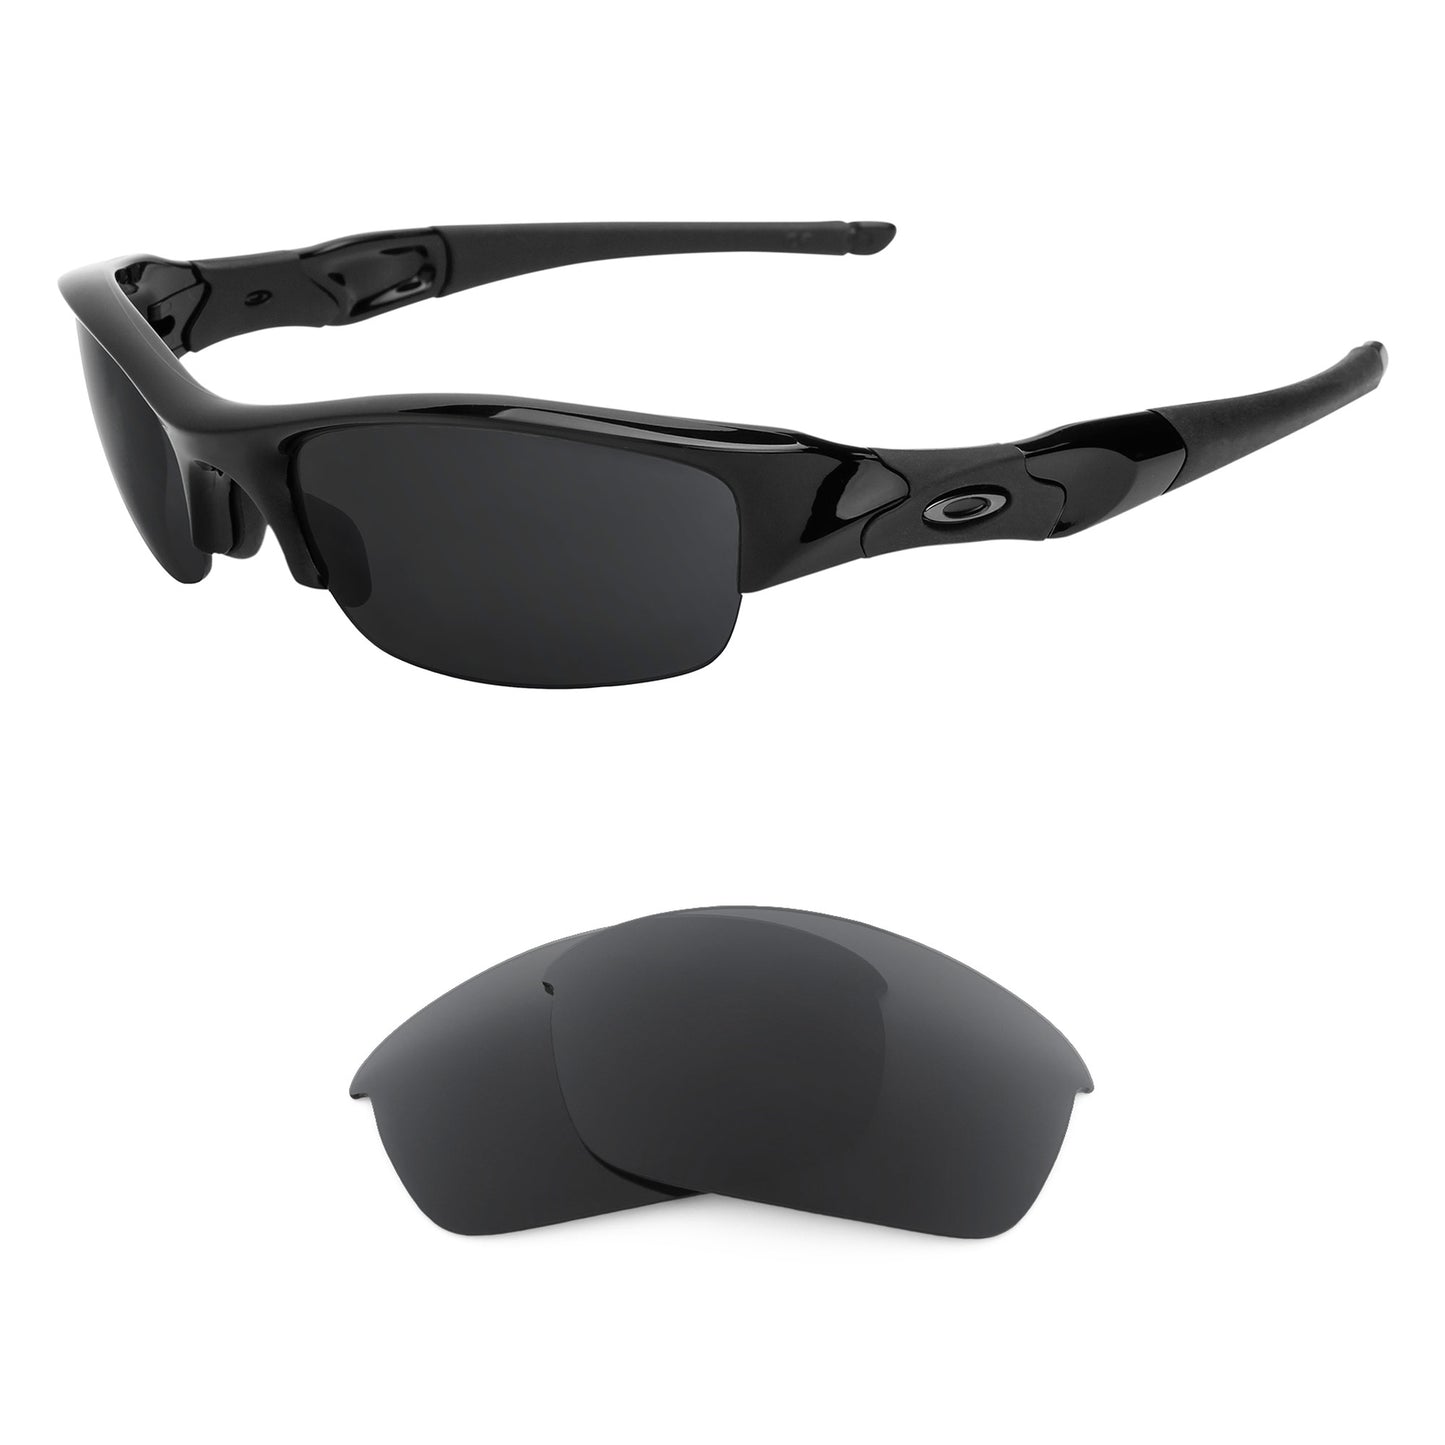 Oakley Flak Jacket (Low Bridge Fit) sunglasses with replacement lenses